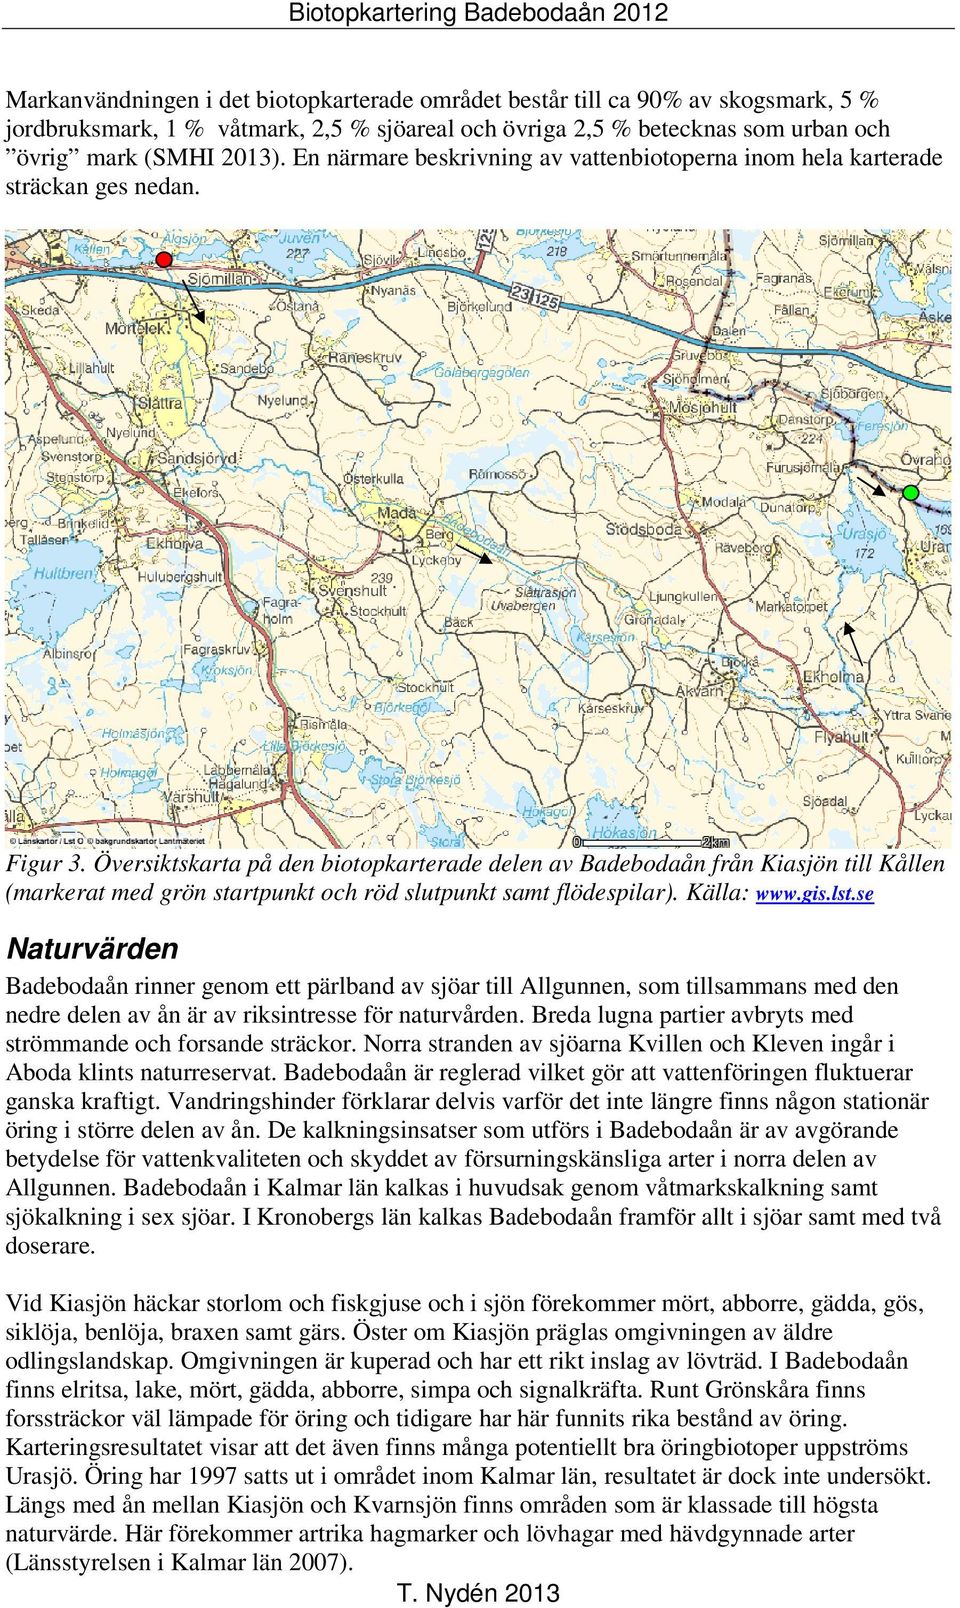 Översiktskarta på den biotopkarterade delen av Badebodaån från Kiasjön till Kållen (markerat med grön startpunkt och röd slutpunkt samt flödespilar). Källa: www.gis.lst.